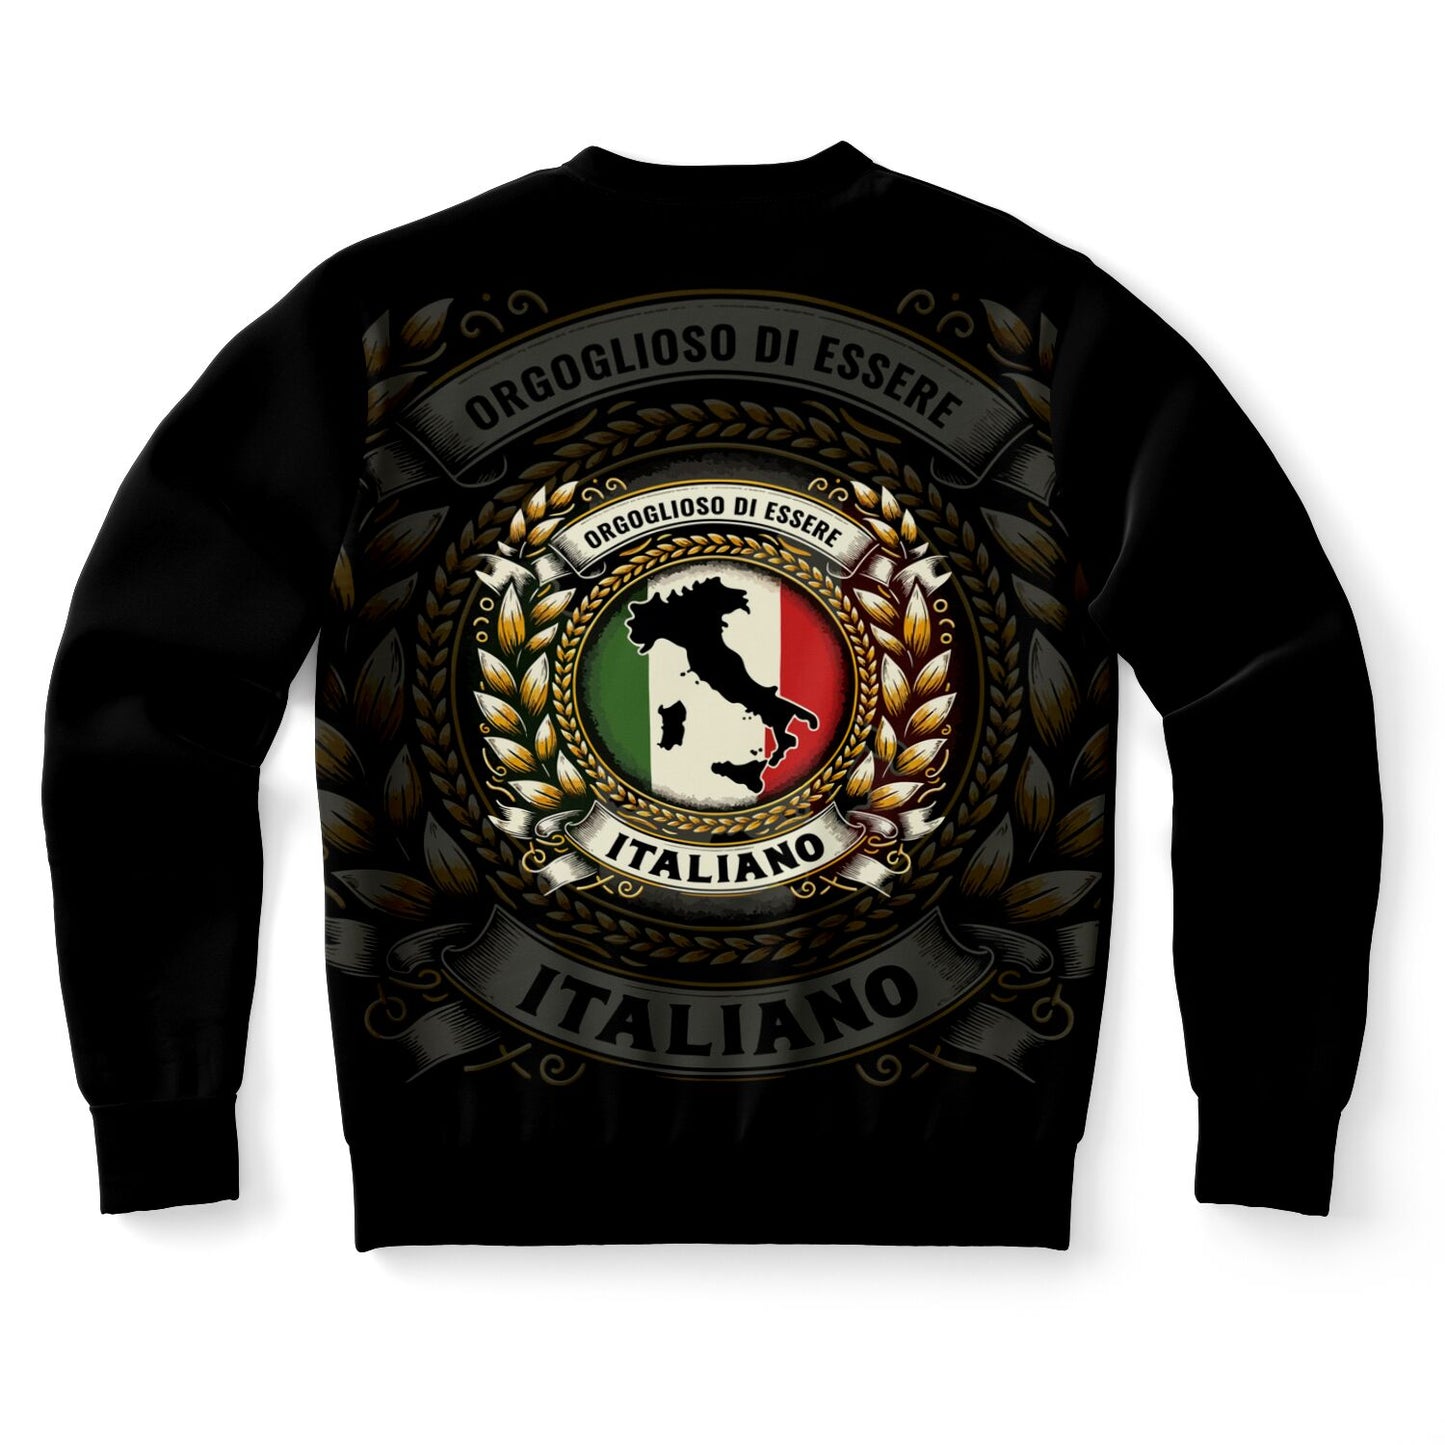 Orgoglioso di Essere Italiano- Sweatshirt